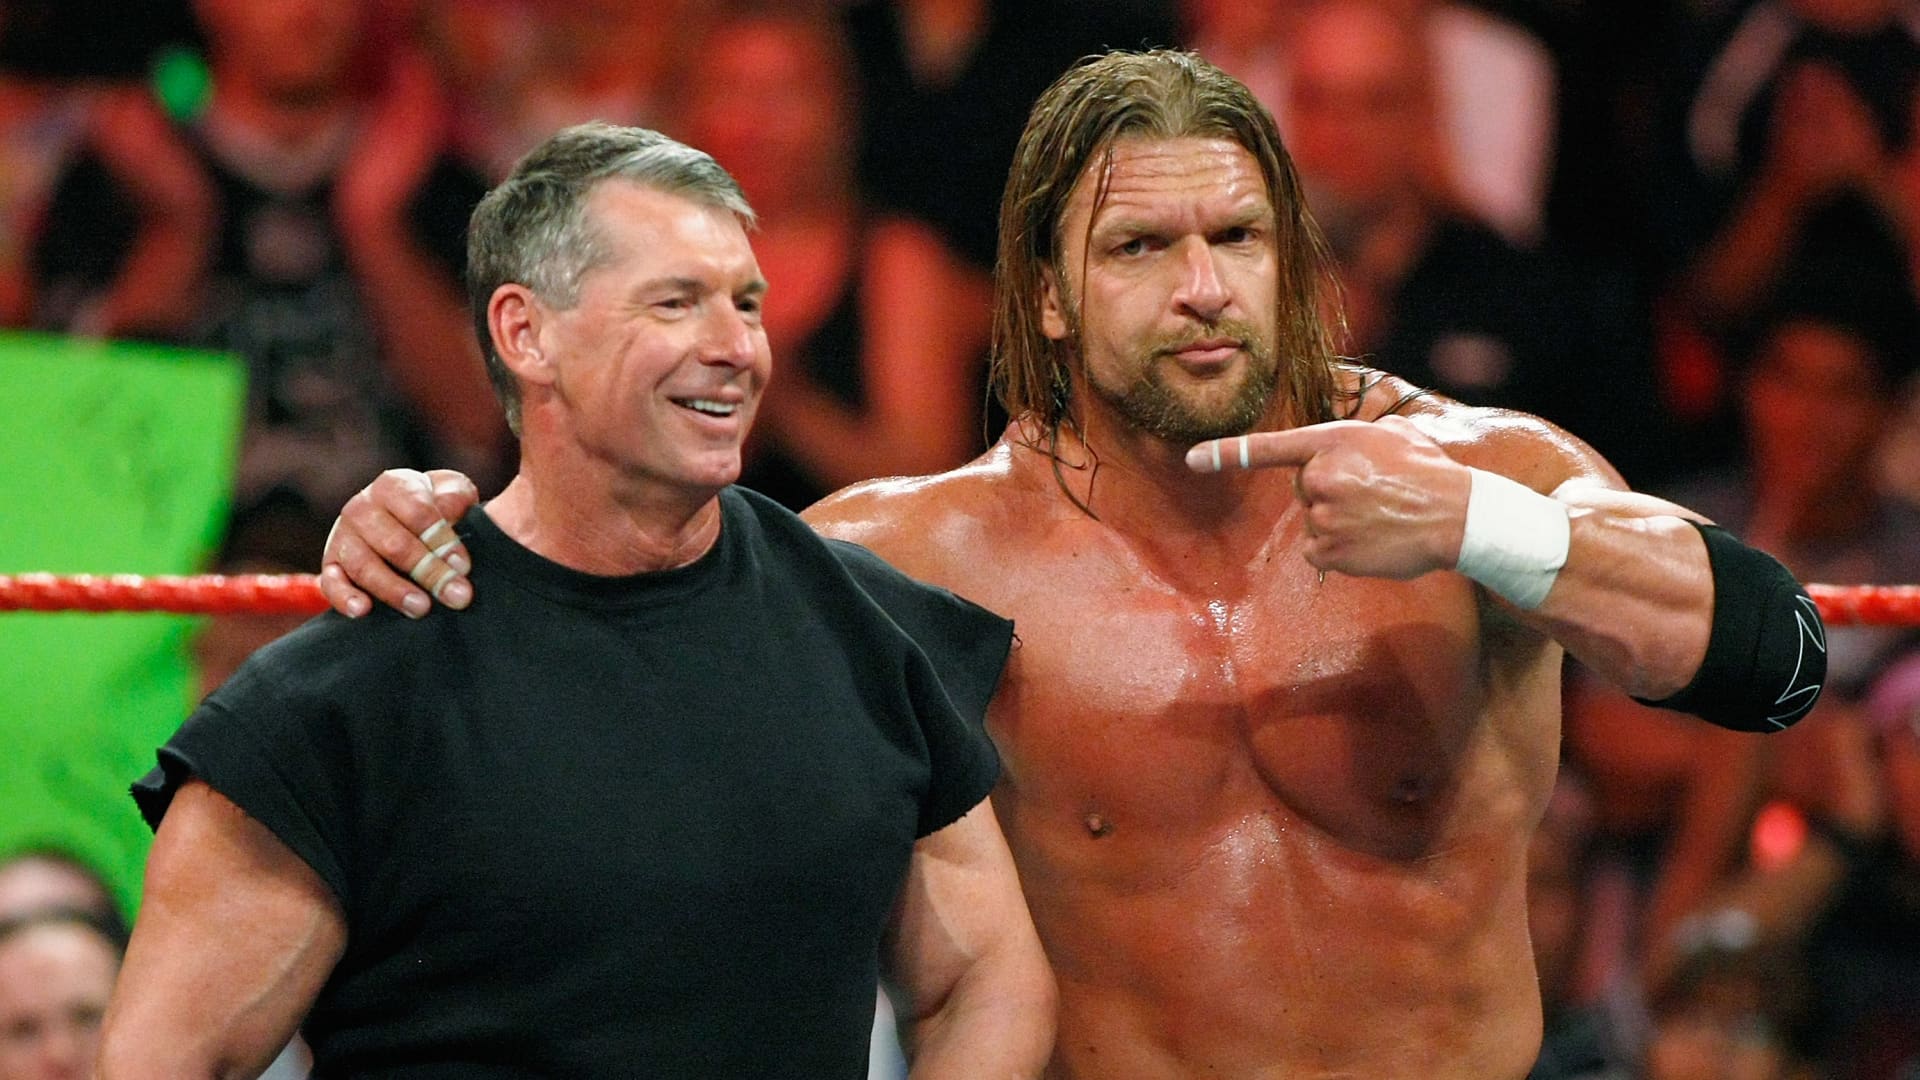 La WWE révèle 5 millions de dollars en paiements McMahon, le rapport sur les bénéfices retardé